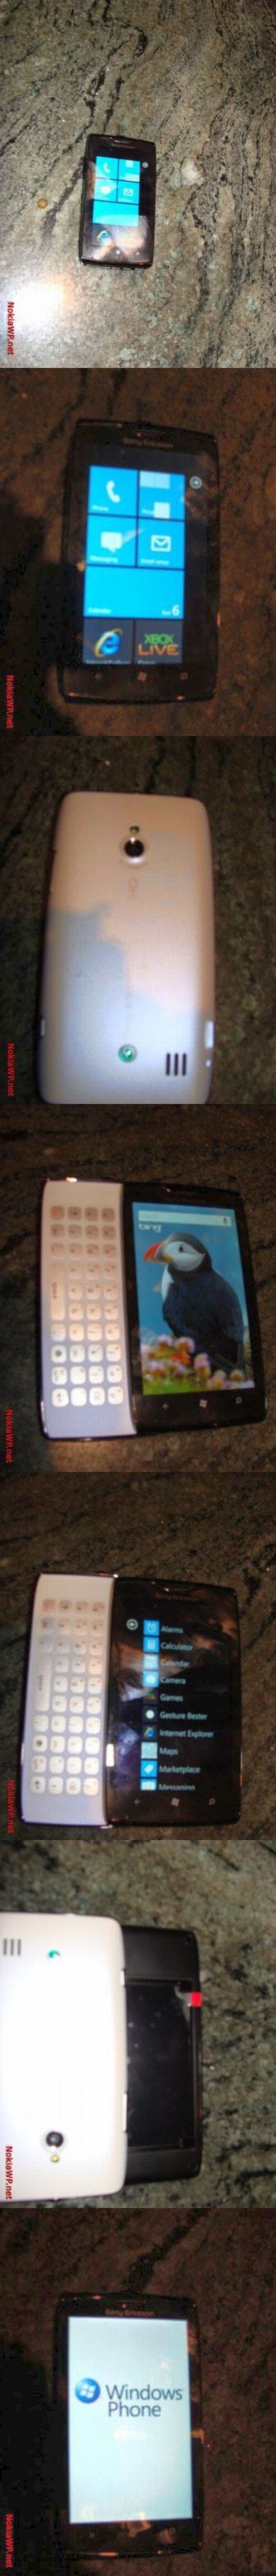 Újabb képeken a Windows Phone-os Sony Ericsson